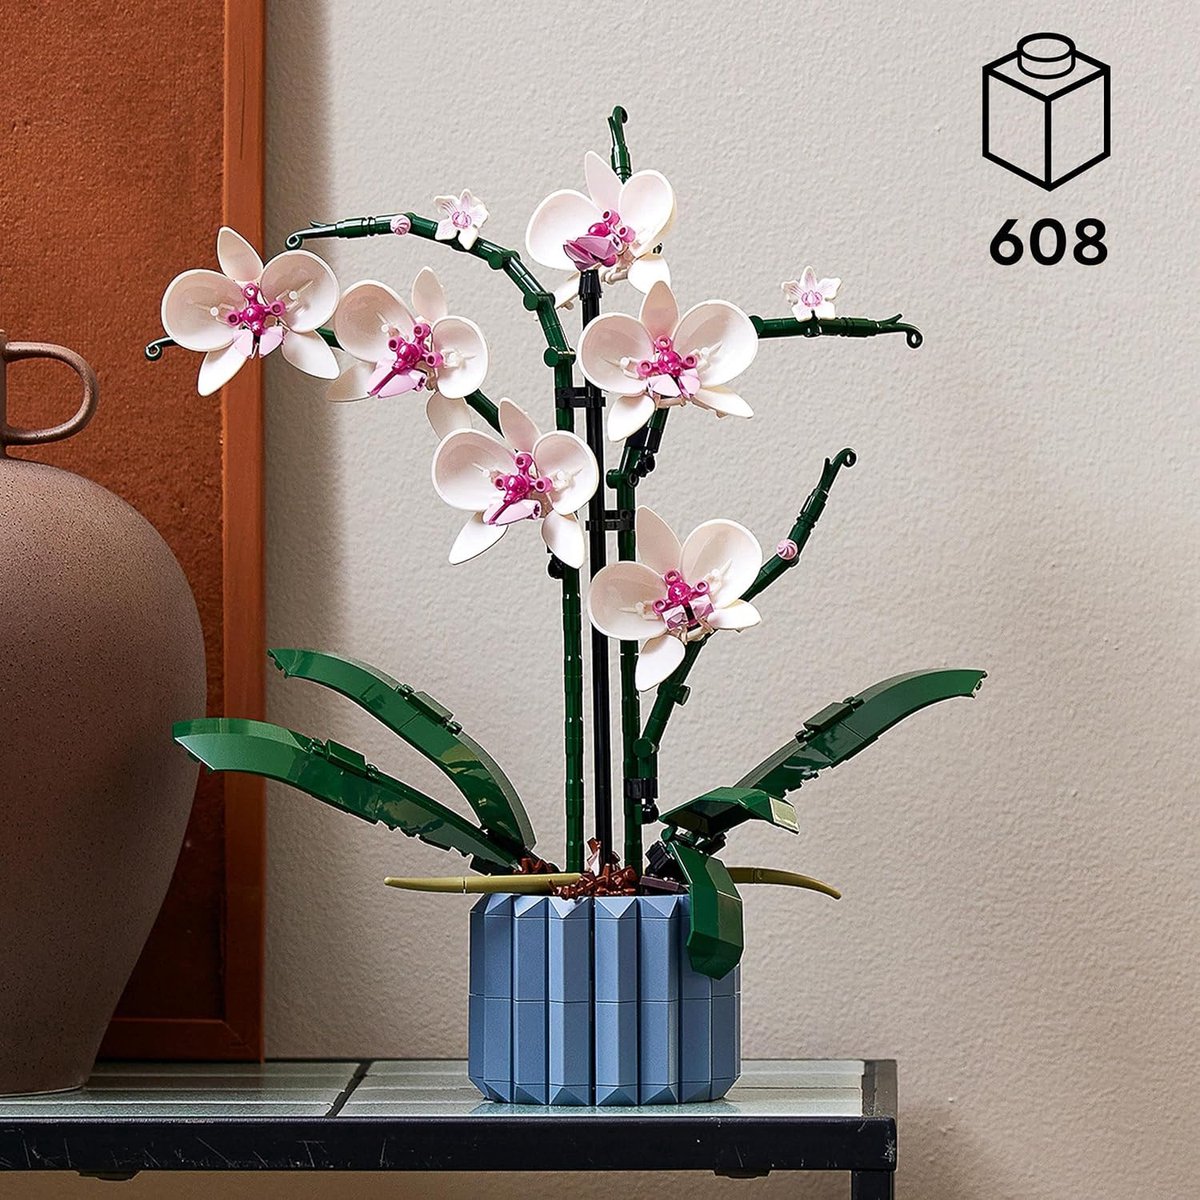 Set voor volwassenen bestaat uit een orchidee plant met witte en roze bloemblaadjes en een blauwe geribbelde vaas